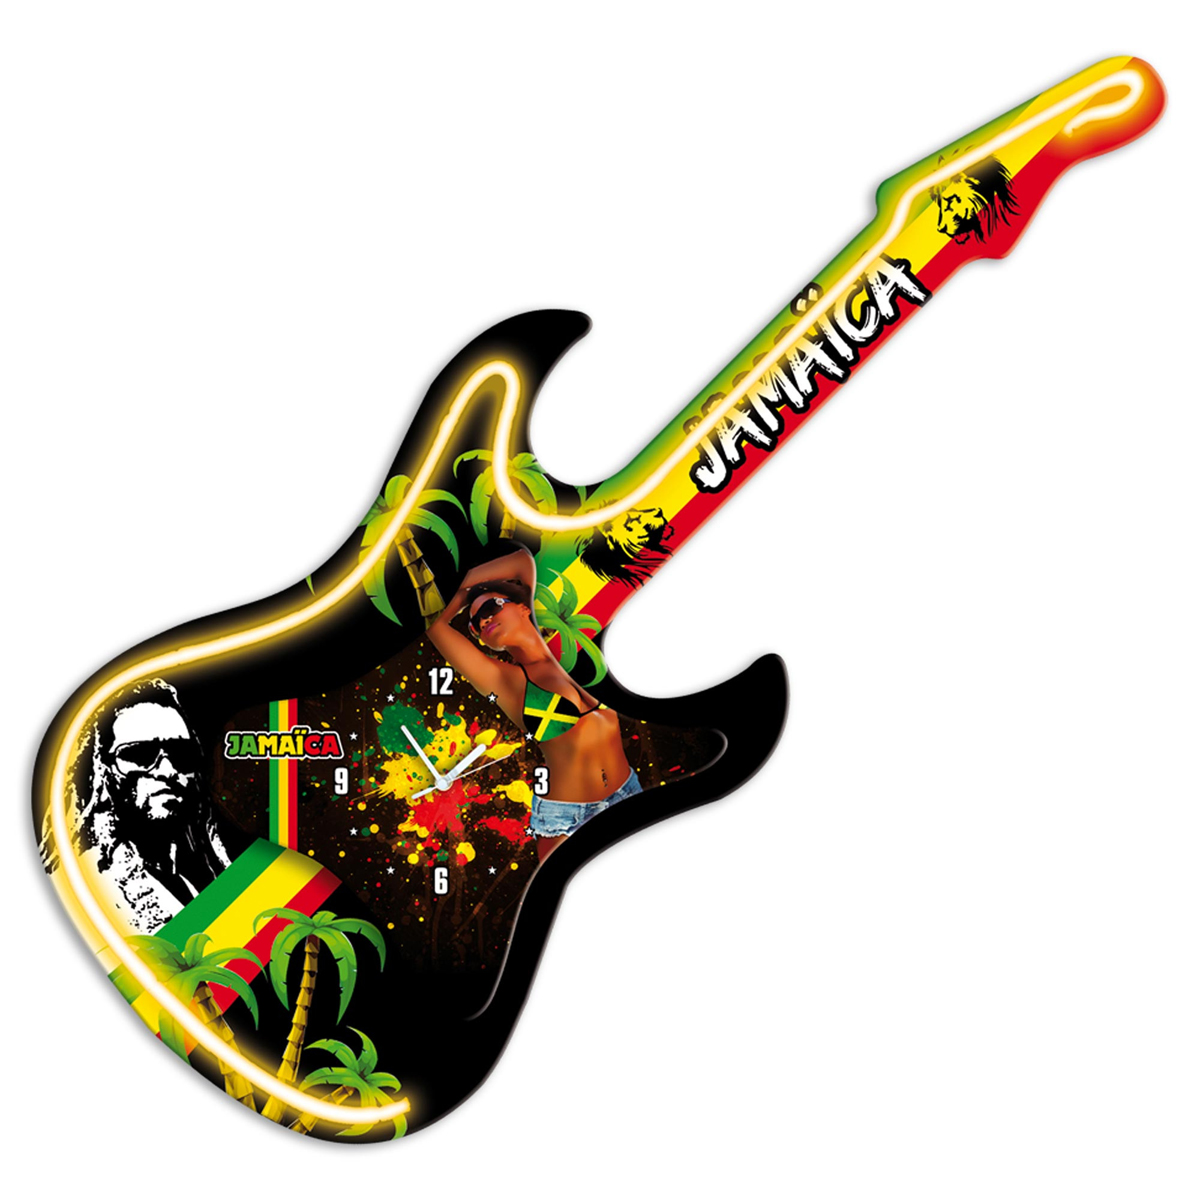 Horloge murale guitare néon \'Jamaica\' vert jaune rouge - 735x30 cm - [P6489]